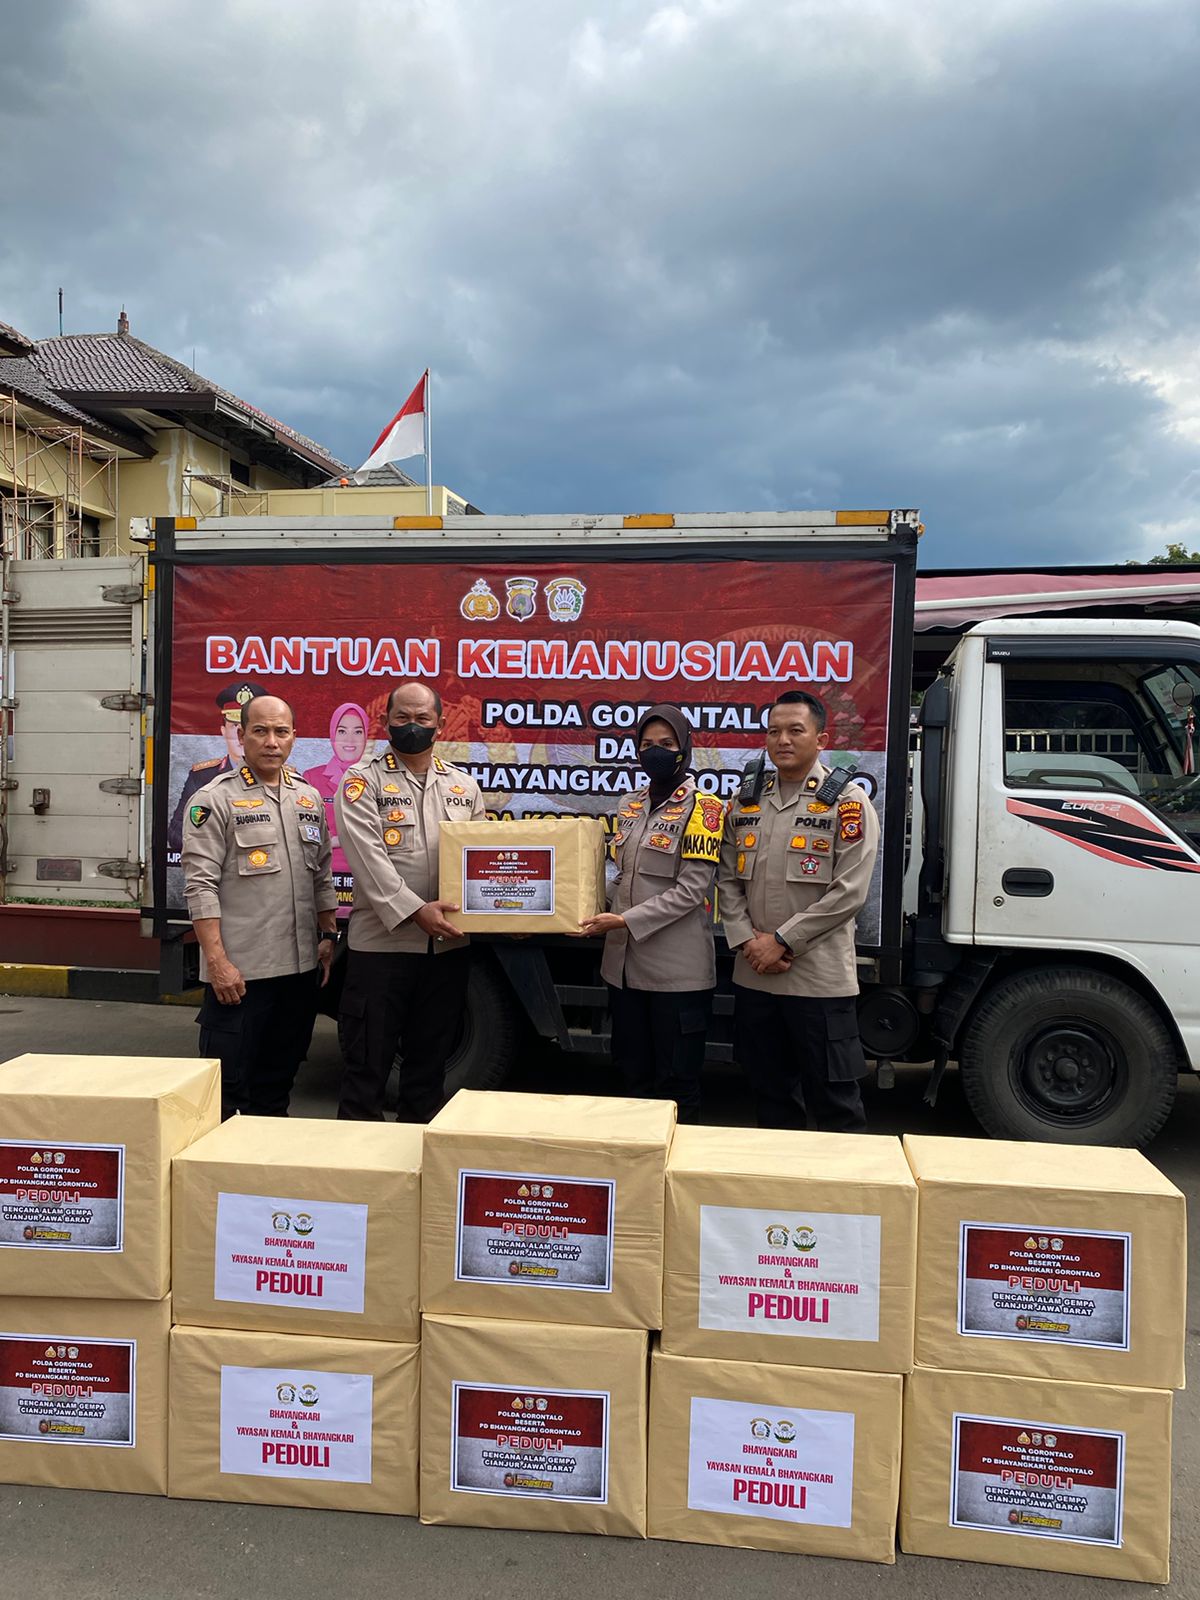 Peduli Kemanusiaan, Polda Gorontalo Salurkan Ribuan Sembako, Obat-Obatan dan Kebutuhan Harian Kepada Korban Gempa Cianjur